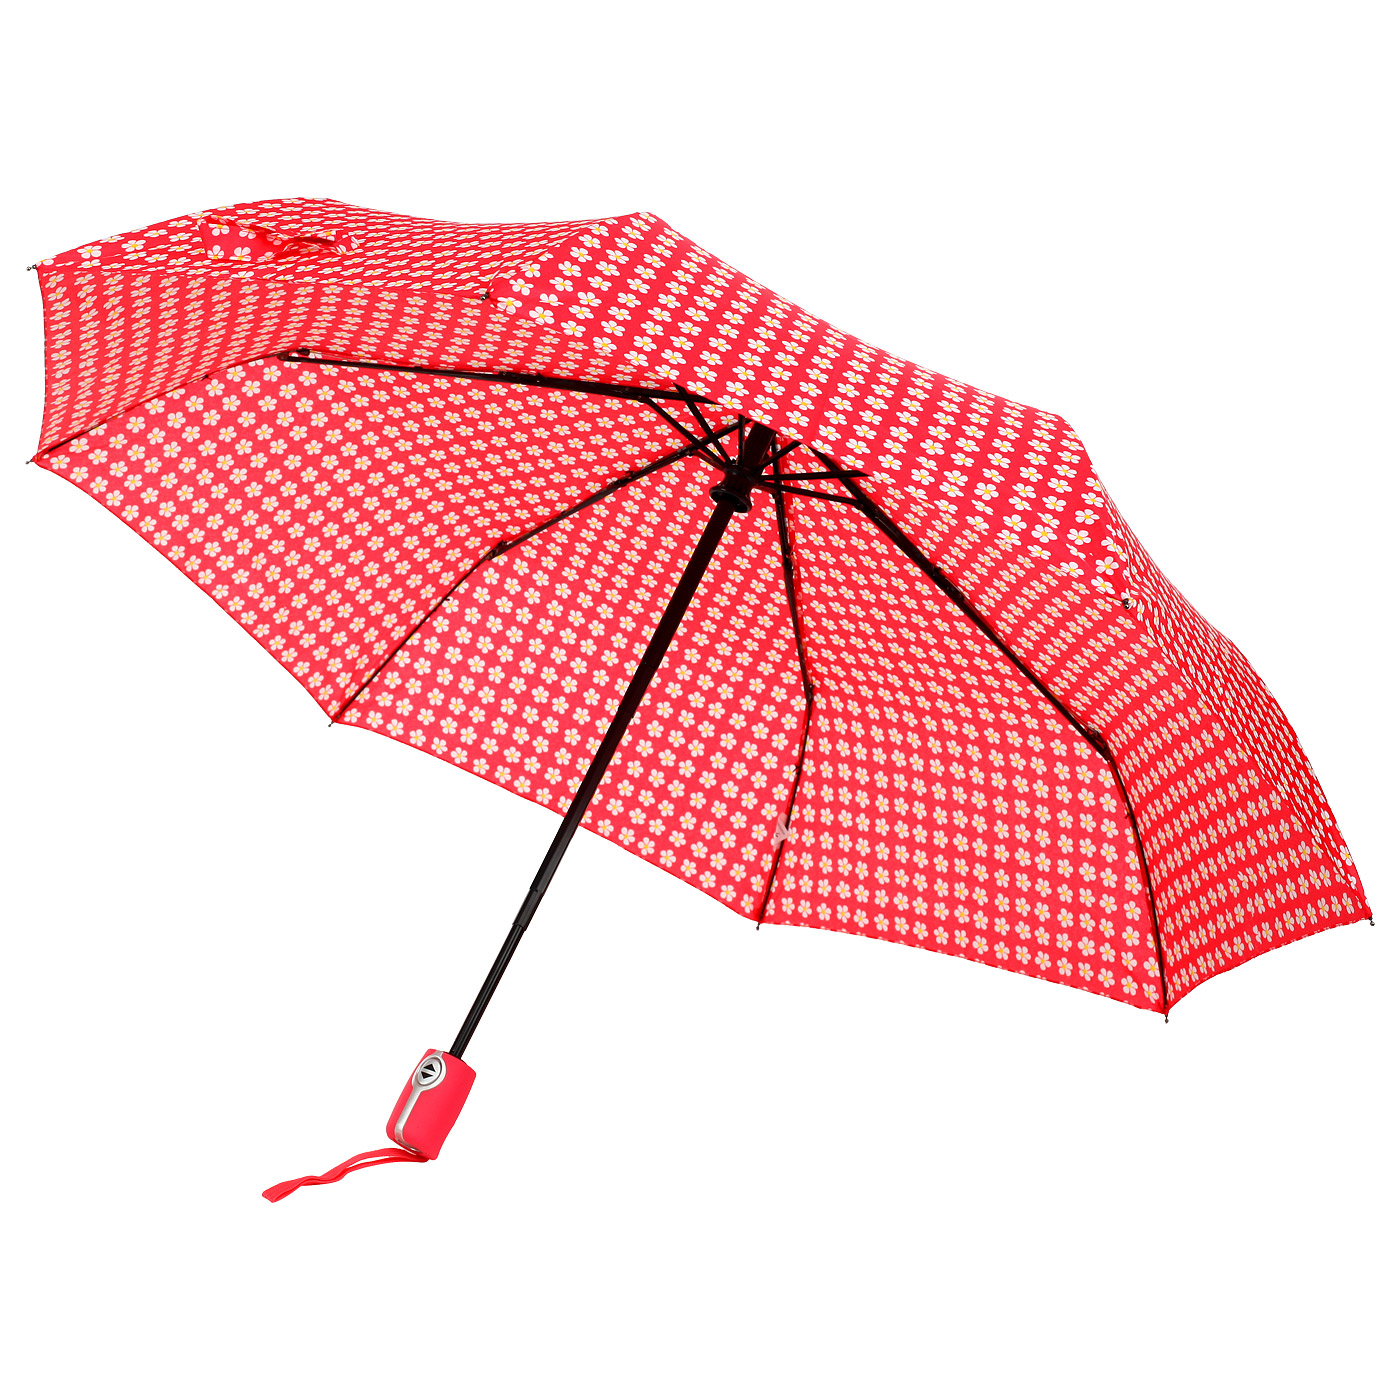 Где купить зонтик. Зонт складной SIPL bq13f. Зонт складной SWS. Складной зонт "Vilar". Steyr / зонт складной.